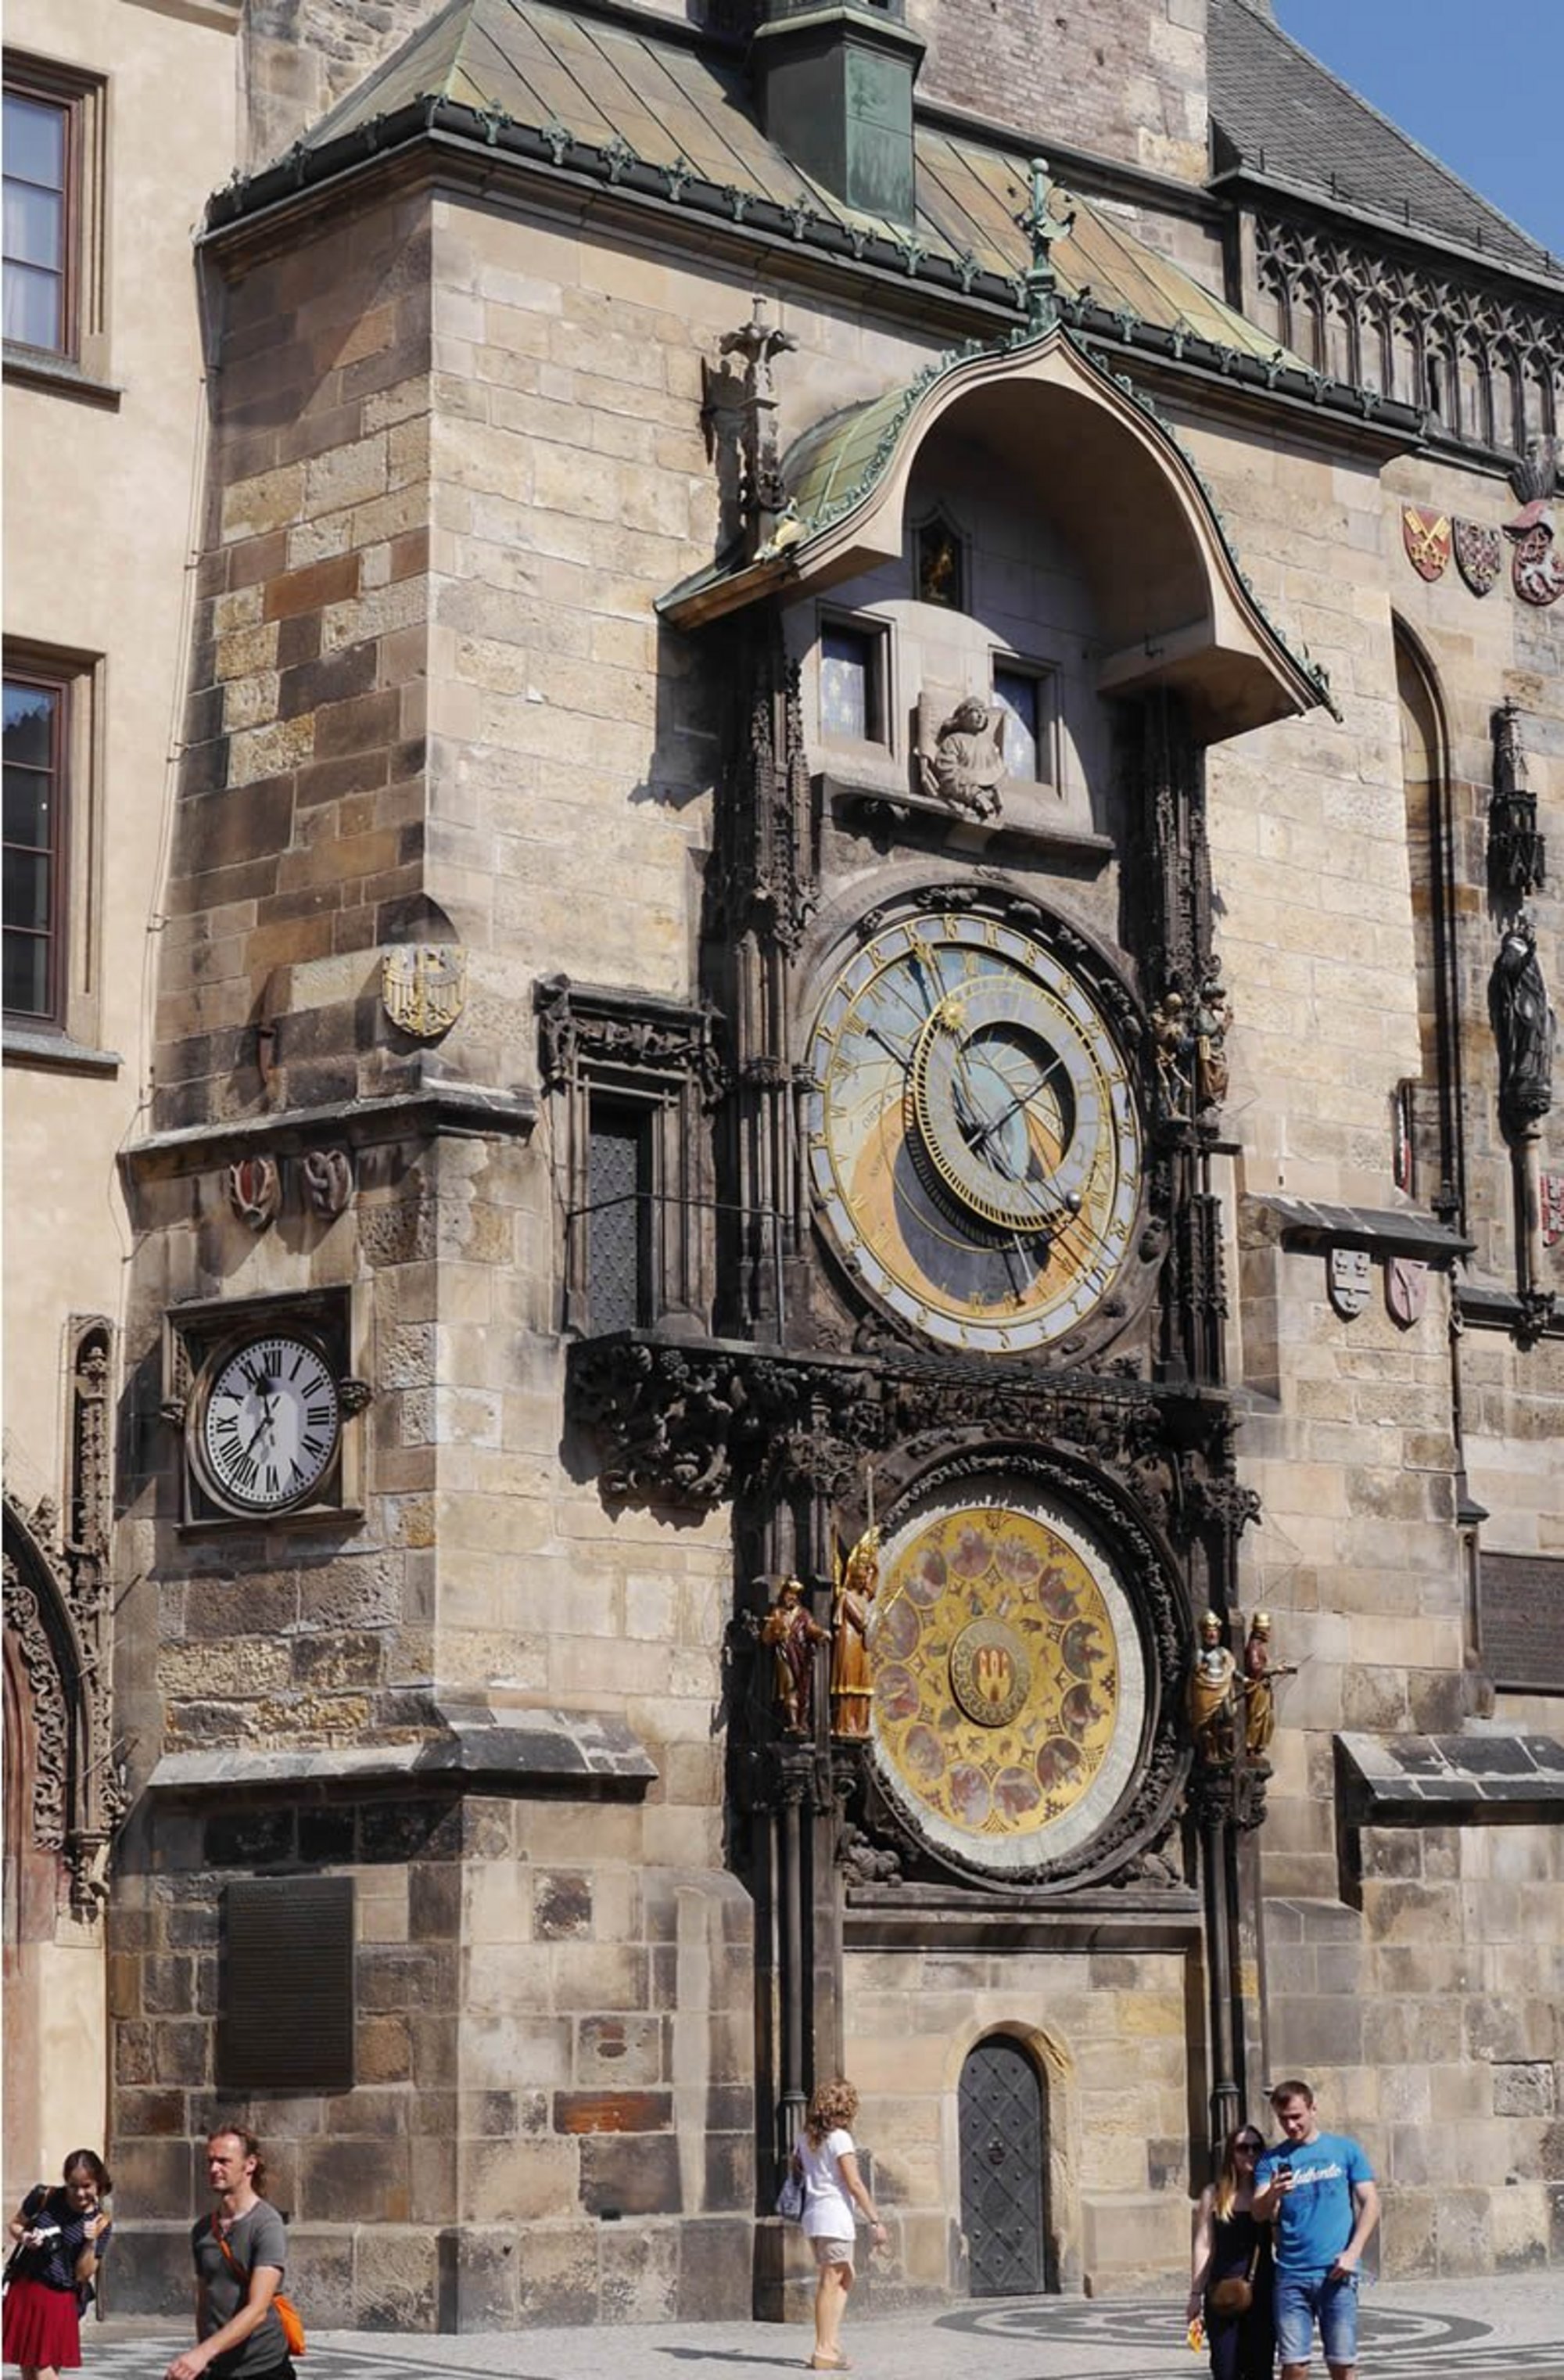 Bild Astrologische Uhr am Alstädter Rathaus in Prag